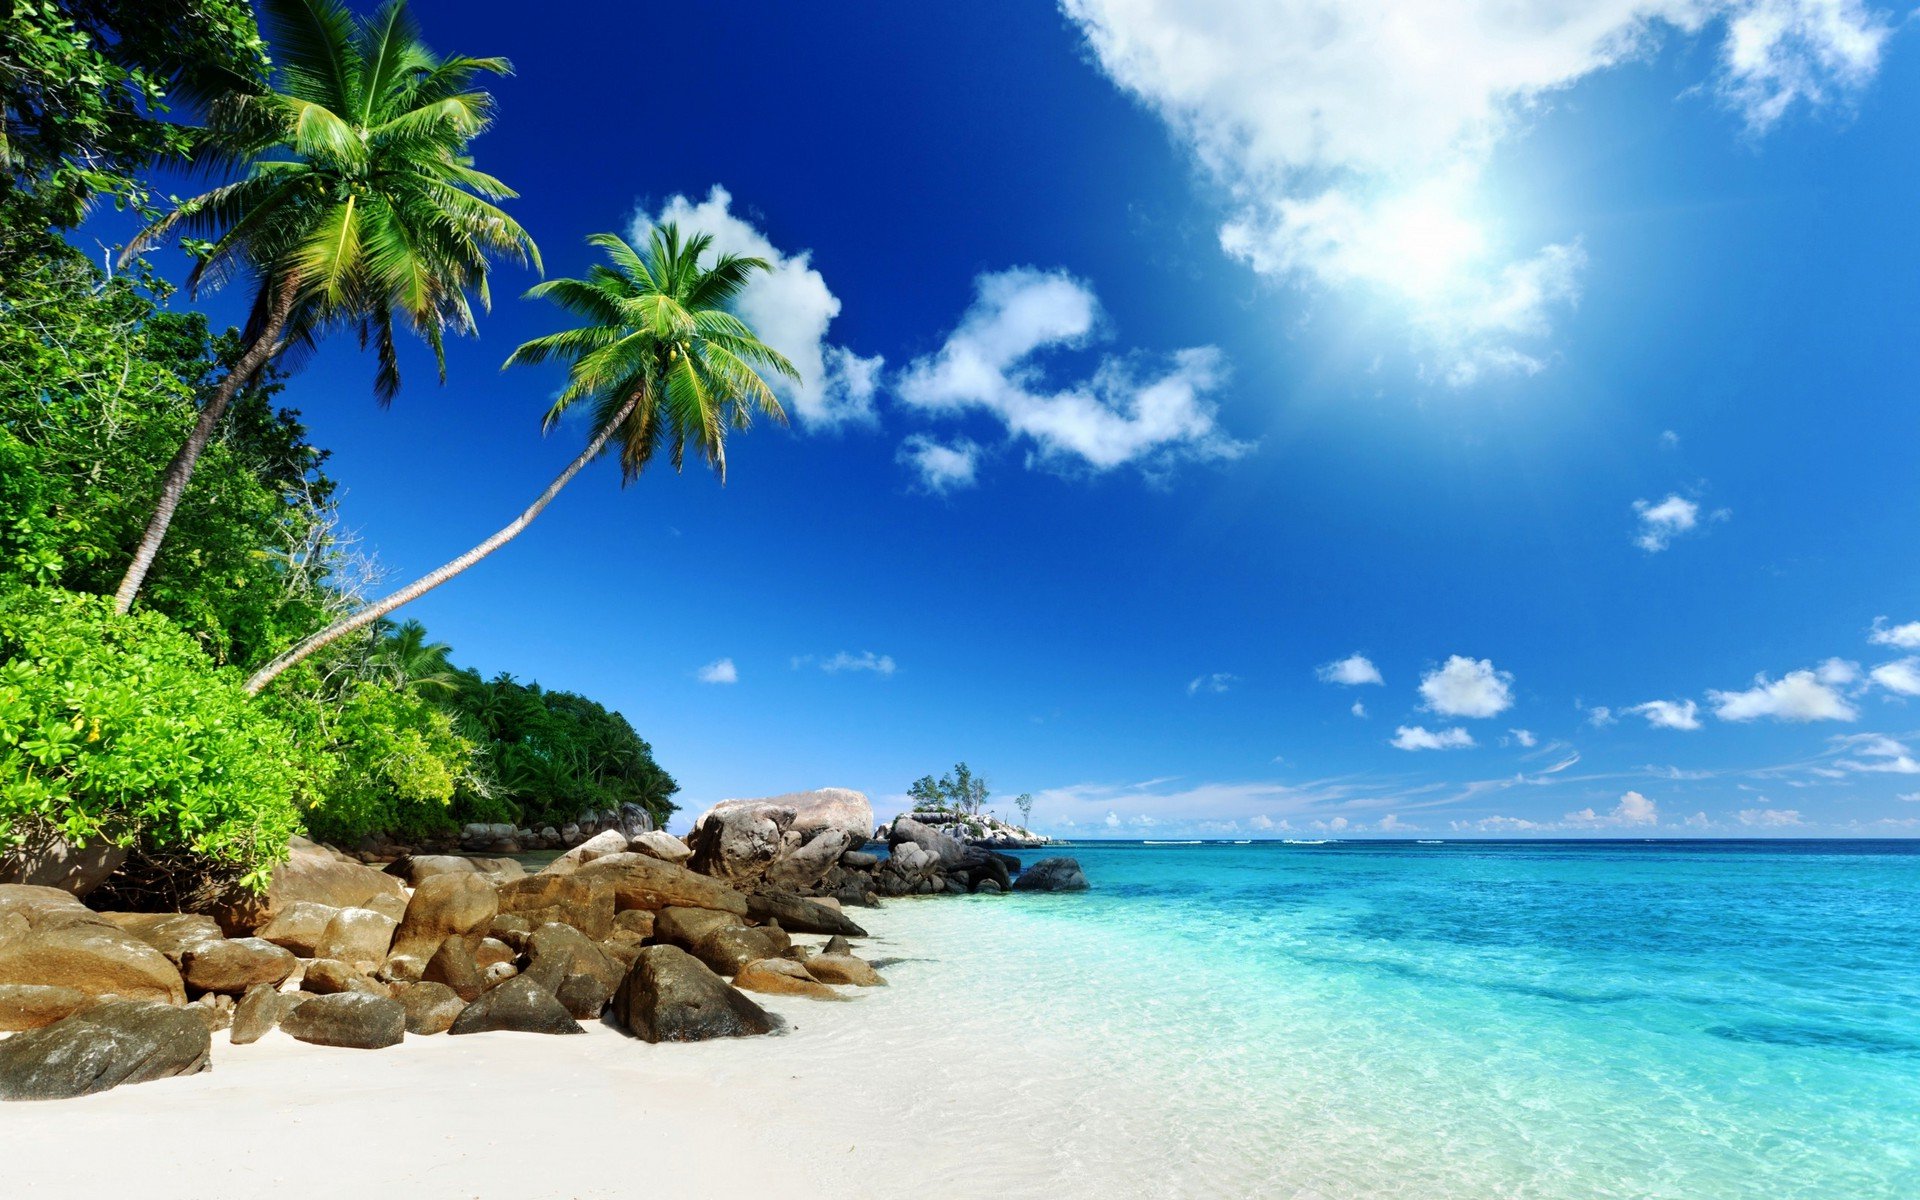 Tropical Desktop Backgrounds Related Keywords